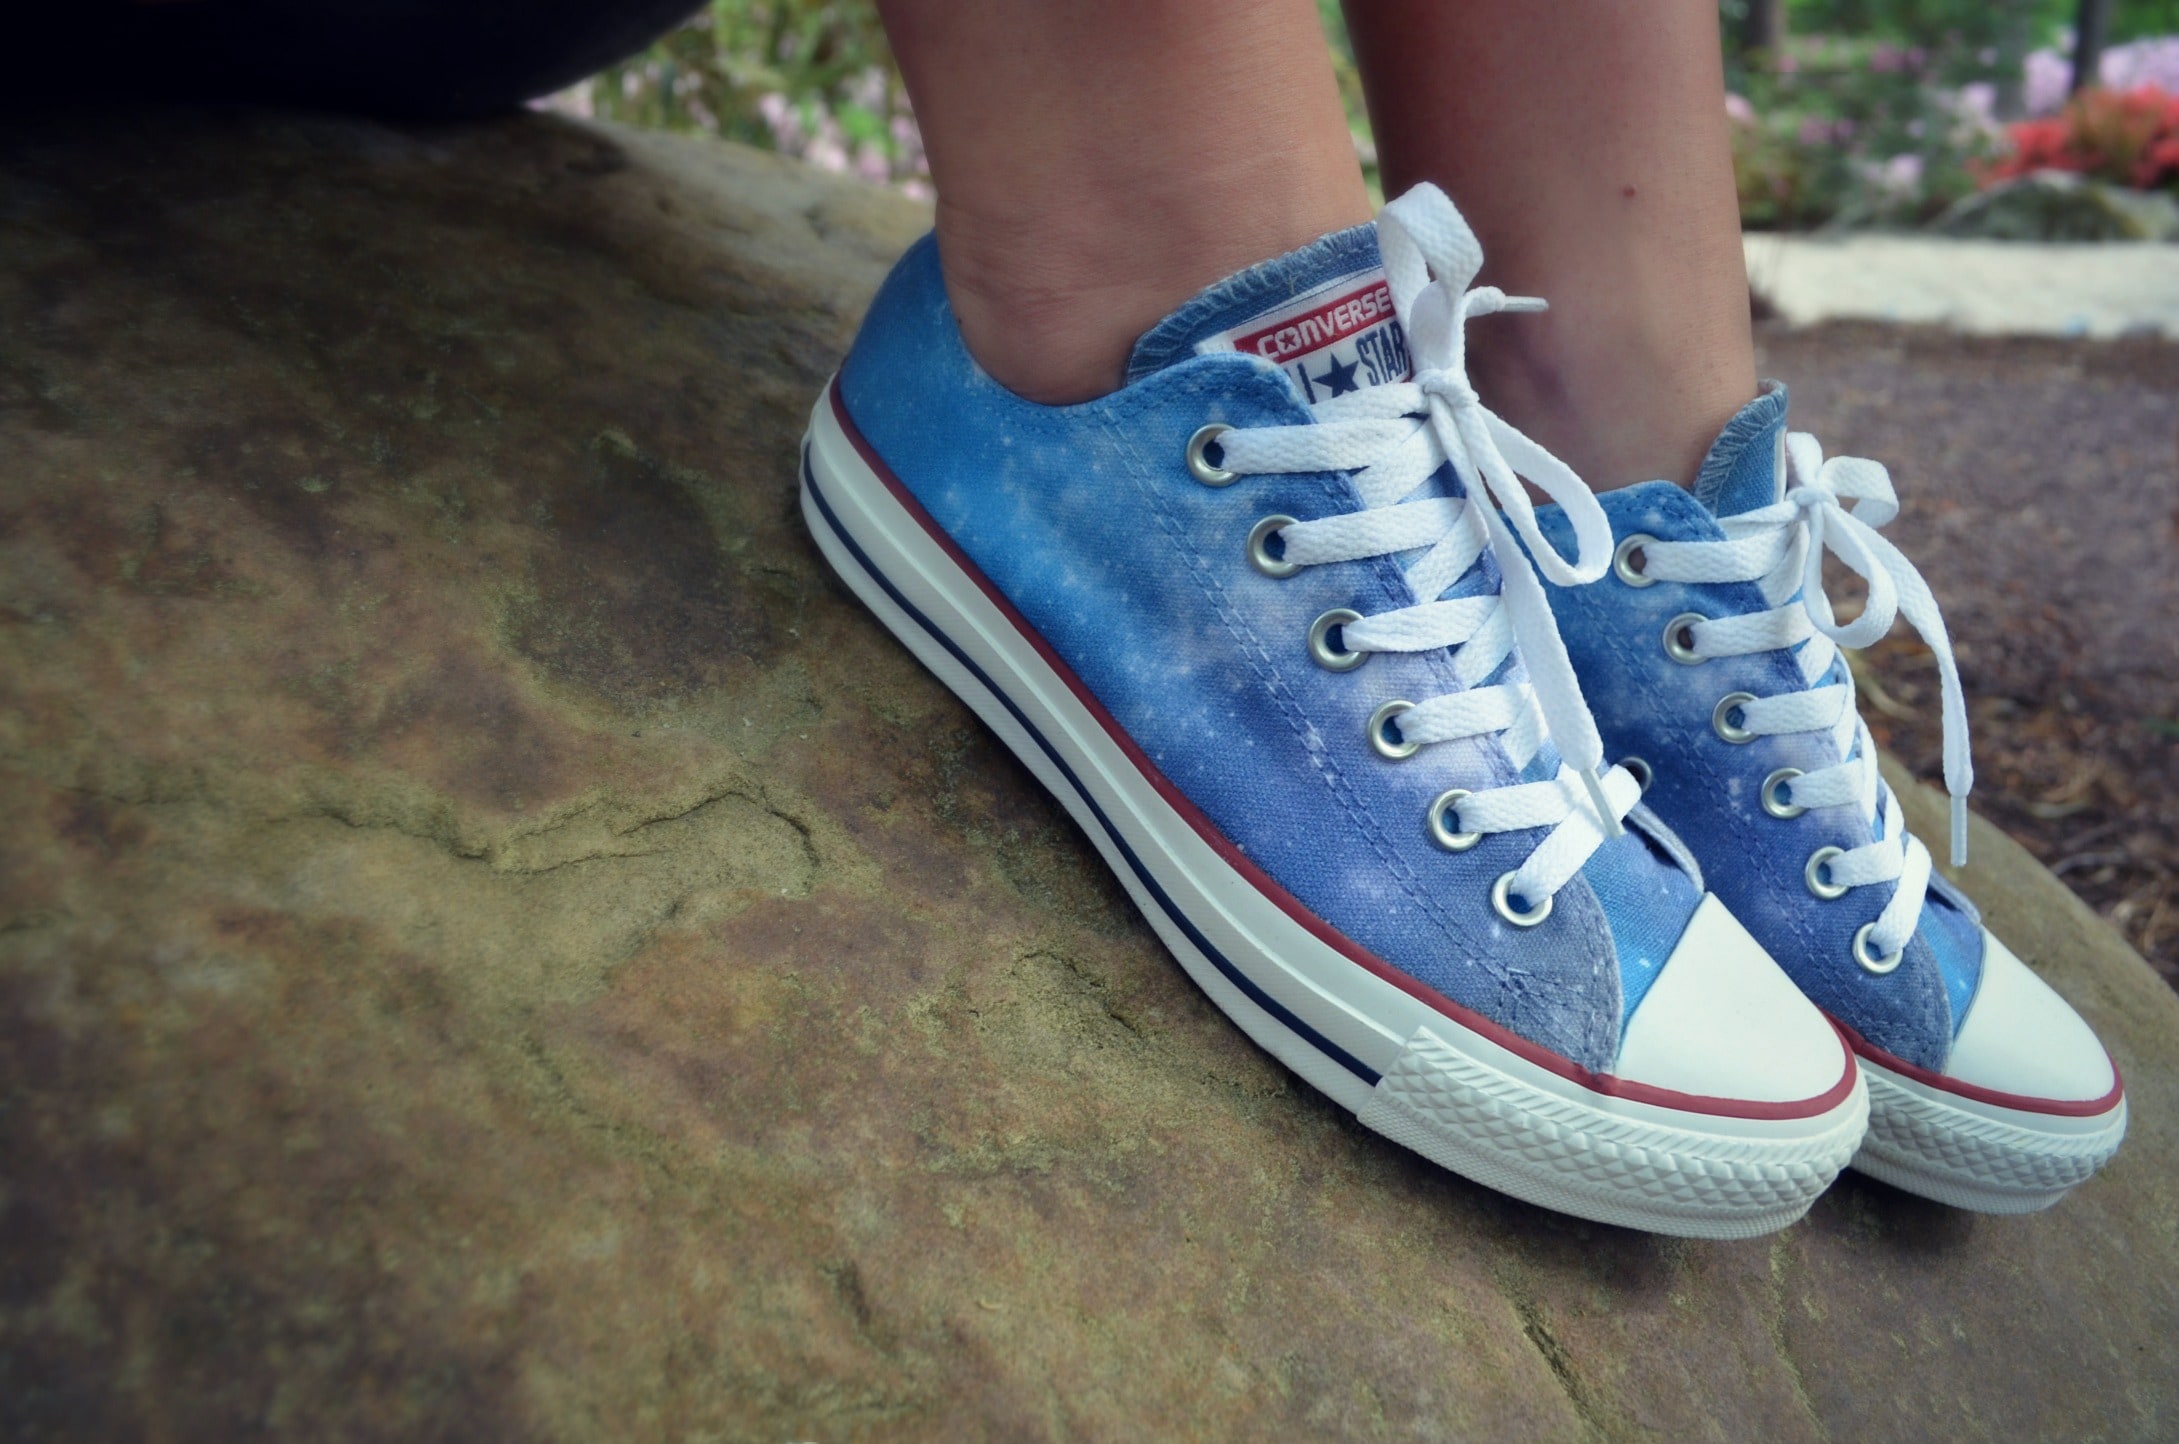 customize converse shoes diy